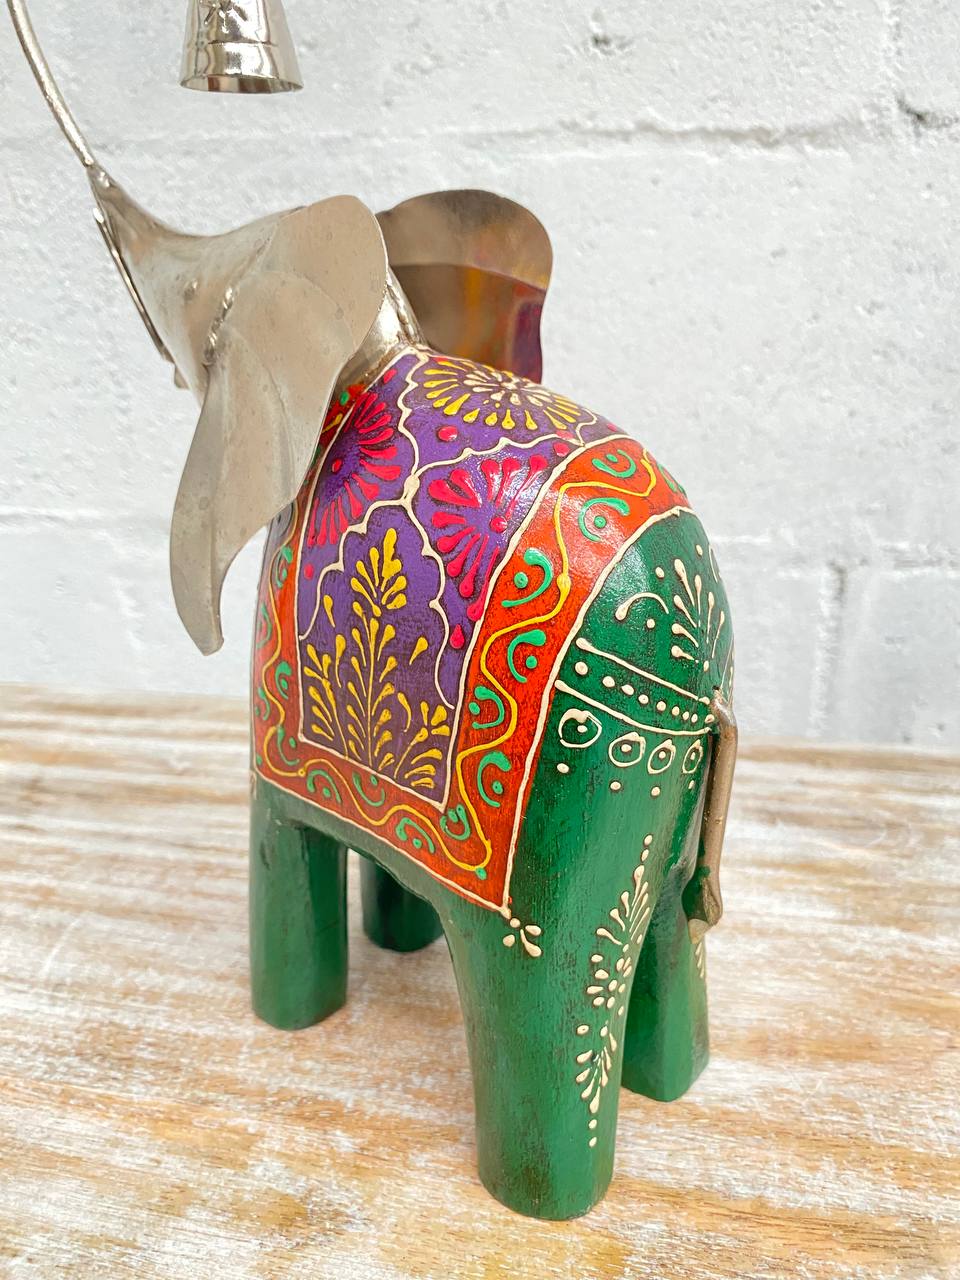 Figura de Elefante "Arte en Madera y Latón" - Trompa Alzada con Campana, Detalles Pintados a Mano